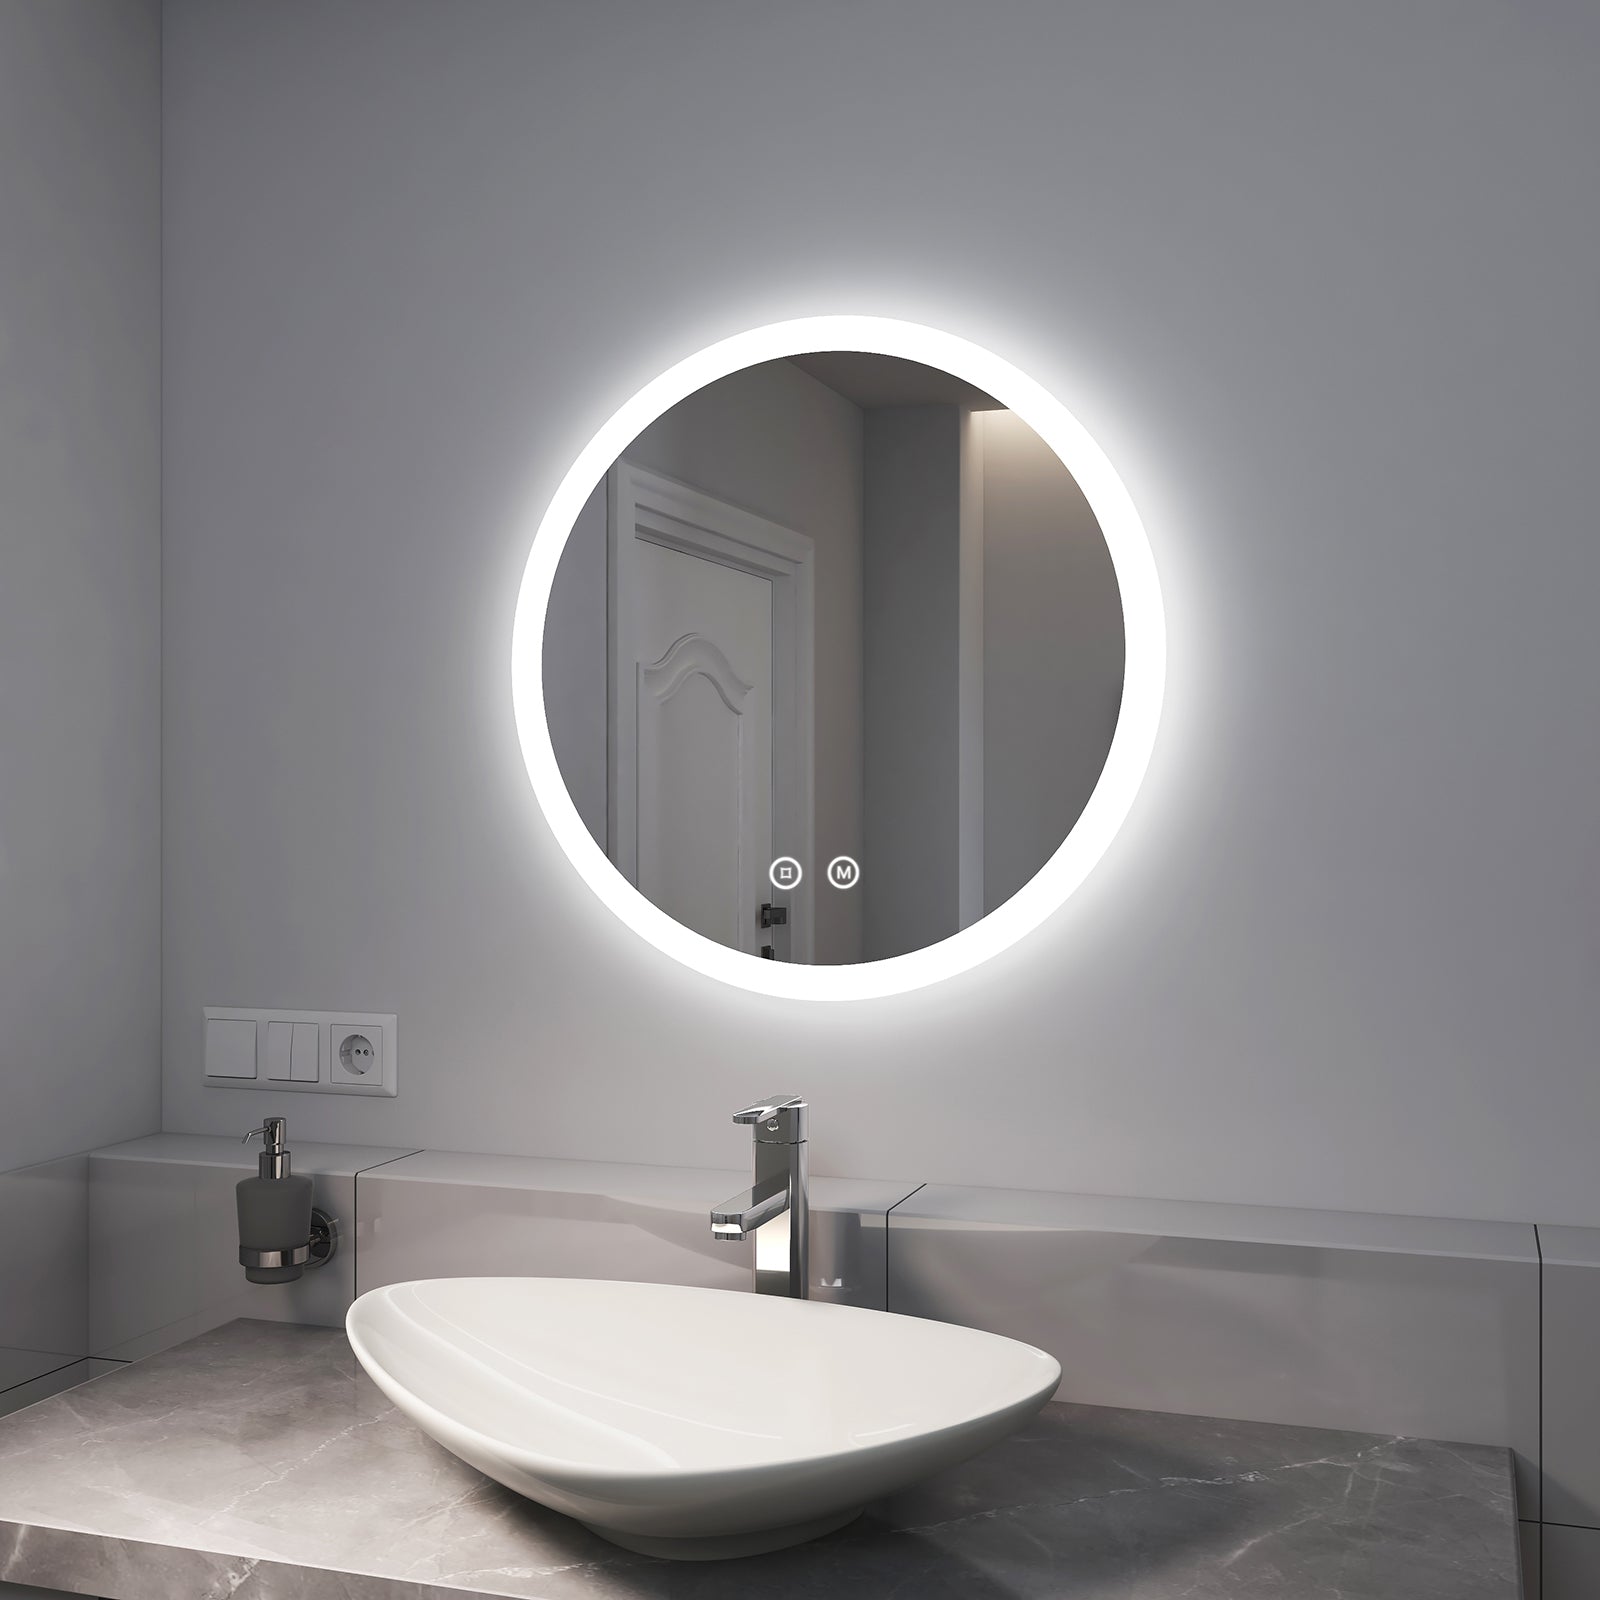 EMKE LED Badspiegel Rund „LeeMi γ Pro“ mit Touch-Schalter, 3 Lichtfarben, Dimmung, Antibeschlag, 60x60cm